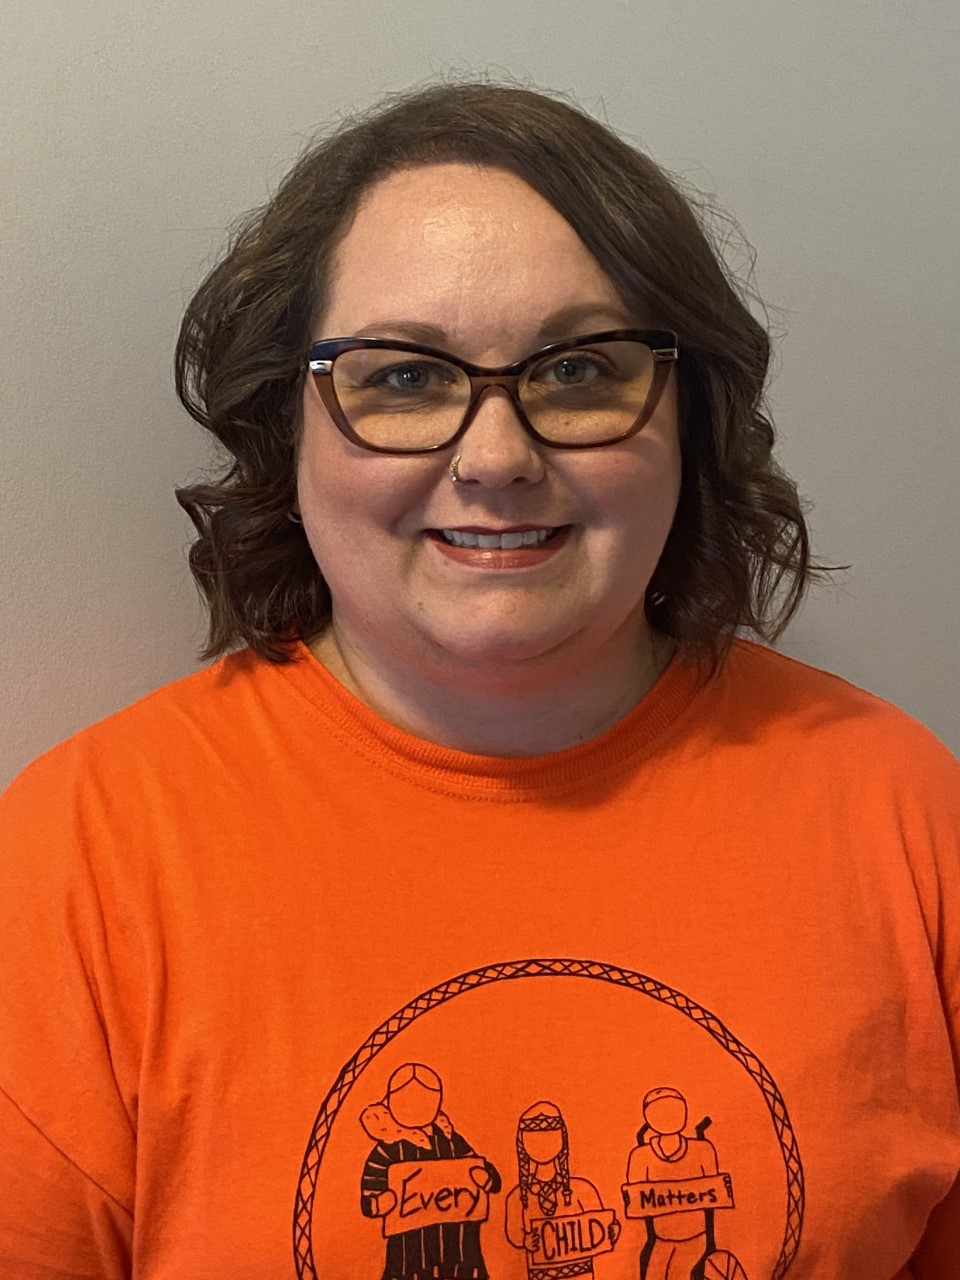 Woman wearing glasses, smiling, orange t shirt